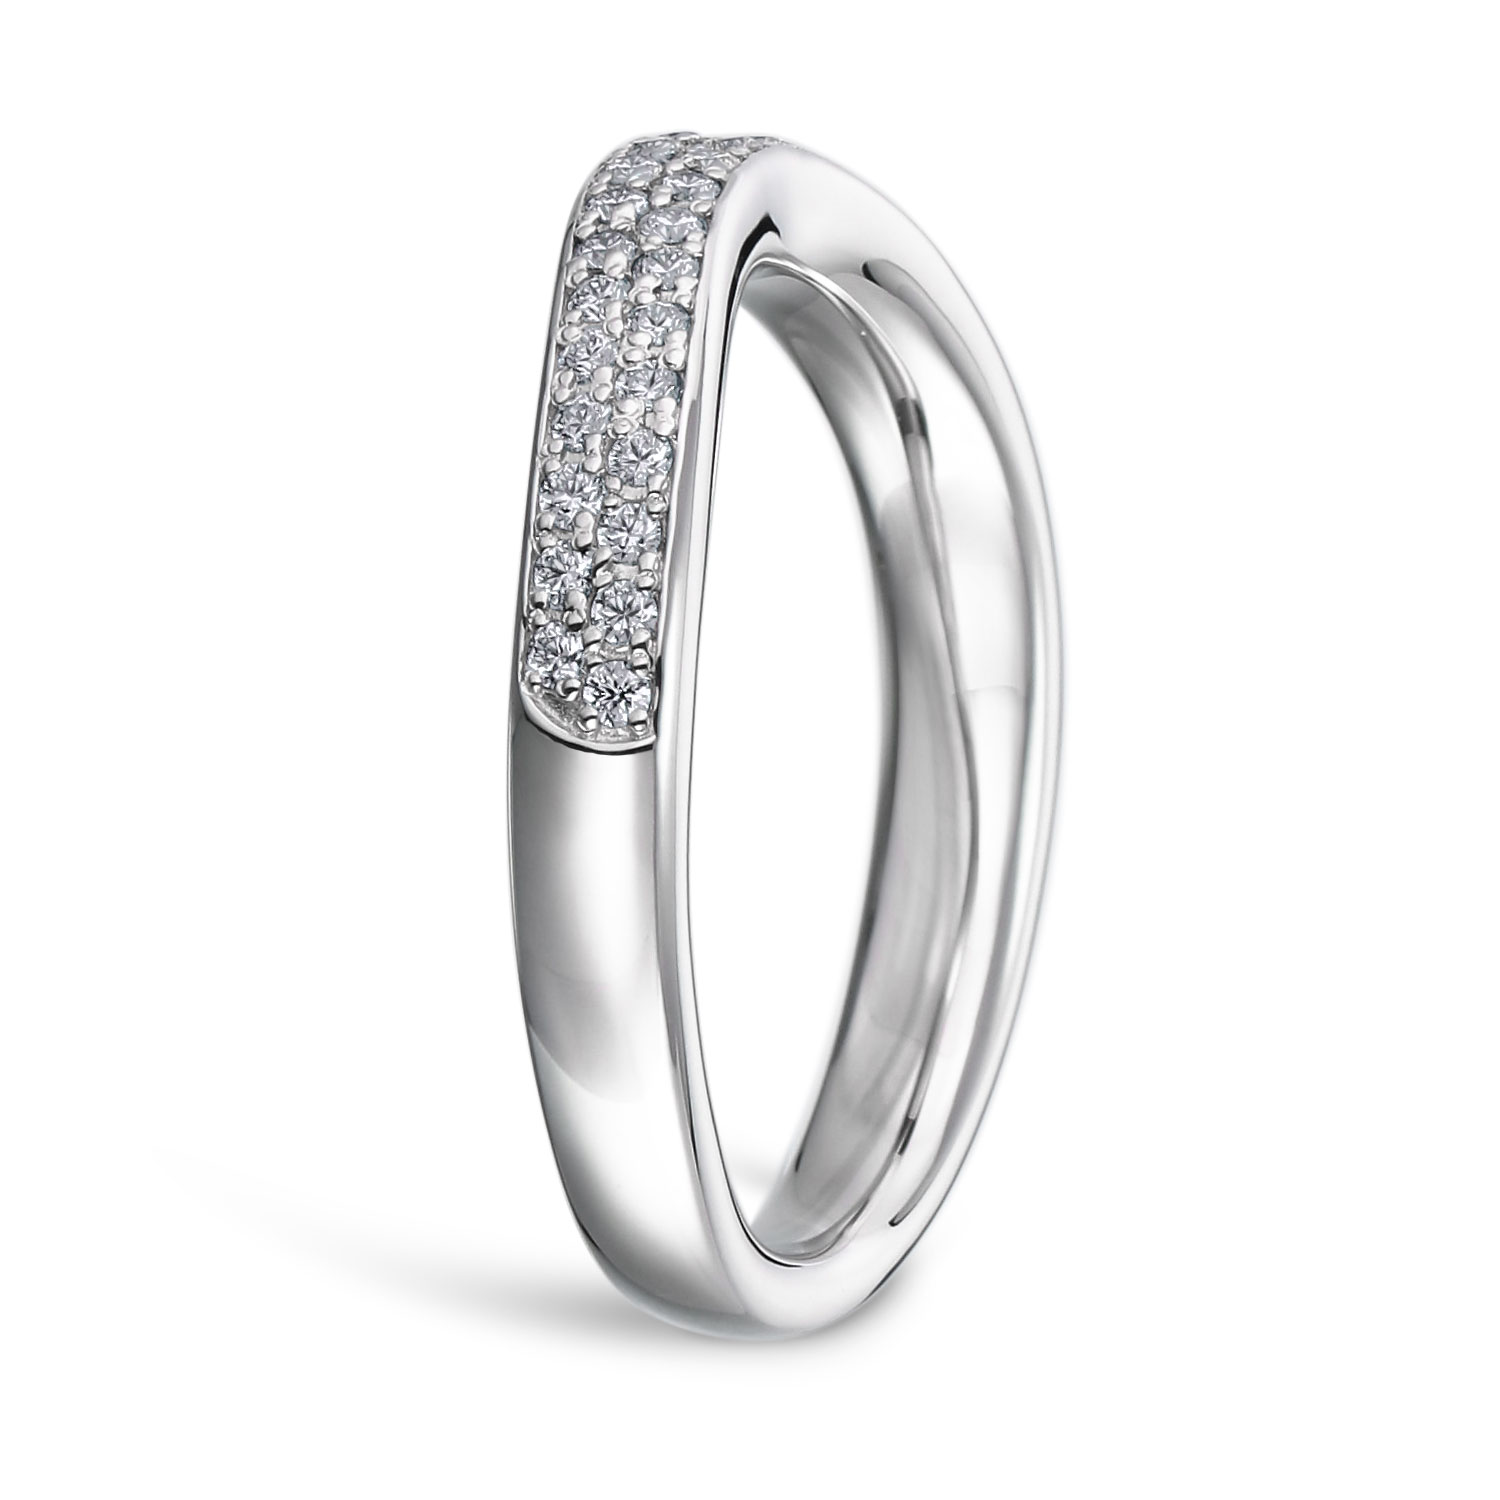 パヴェリング 結婚指輪 MAYU プラチナ(幅2.5mm / Pt950) U字 | 結婚 